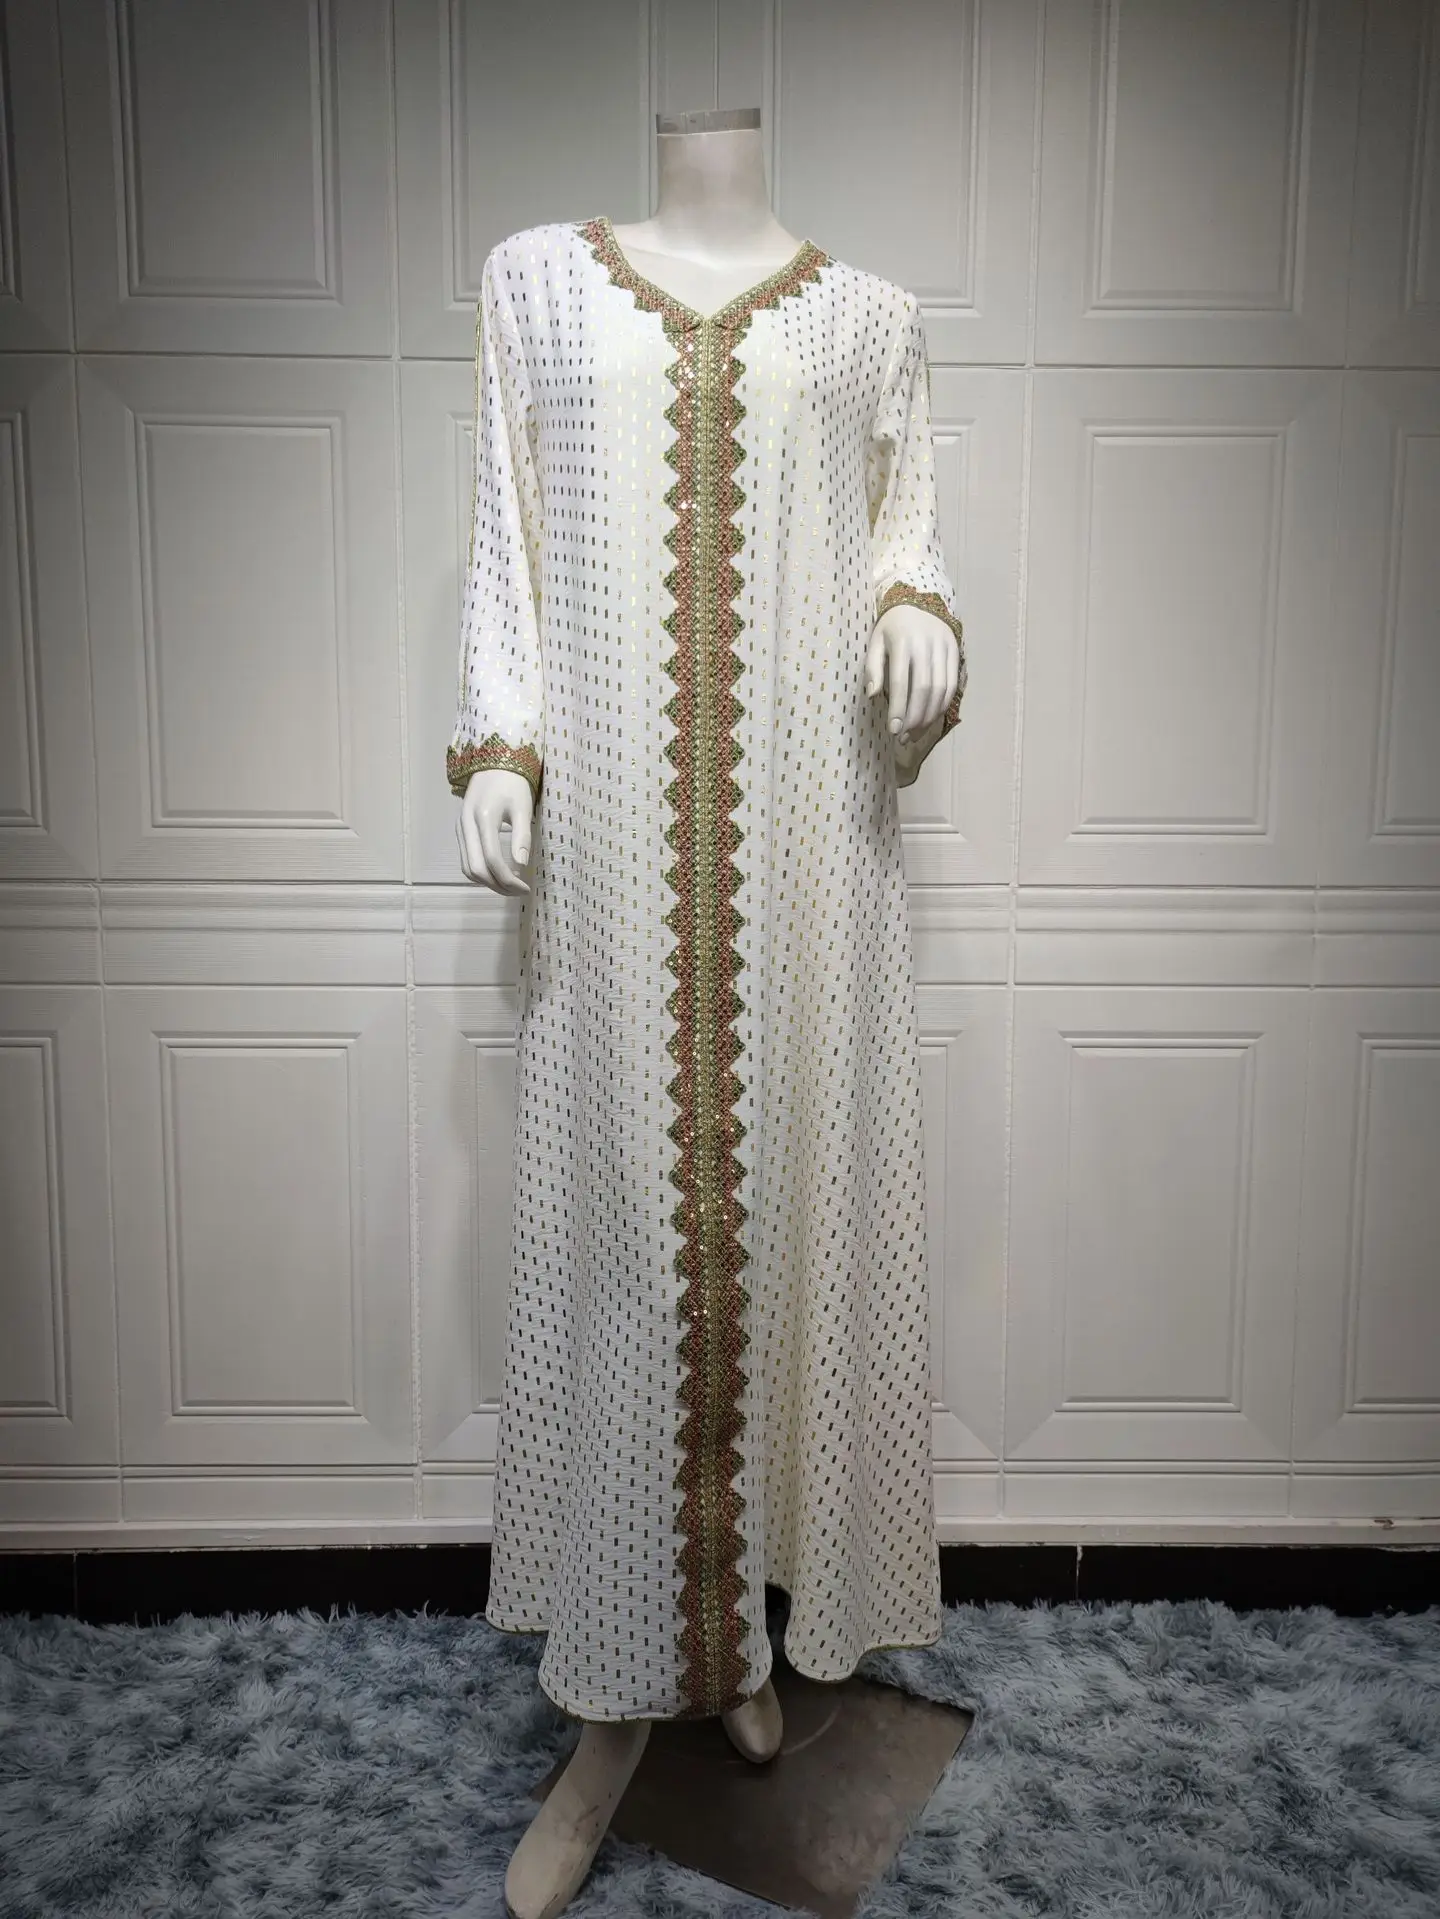 AB146 Внешняя торговля, Электронная коммерция, Ближний Восток, Трансграничная женская одежда, Лето 2023, Новое позолоченное мусульманское платье из Дубая Изображение 5